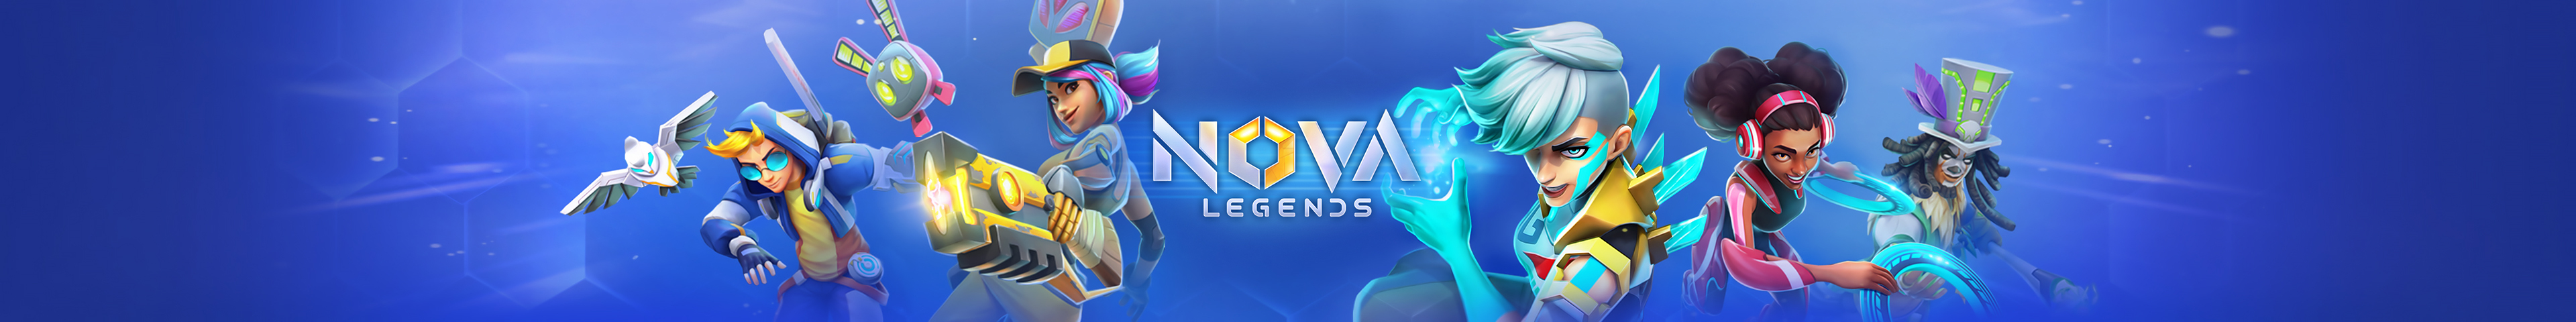 Nova Legends Forum